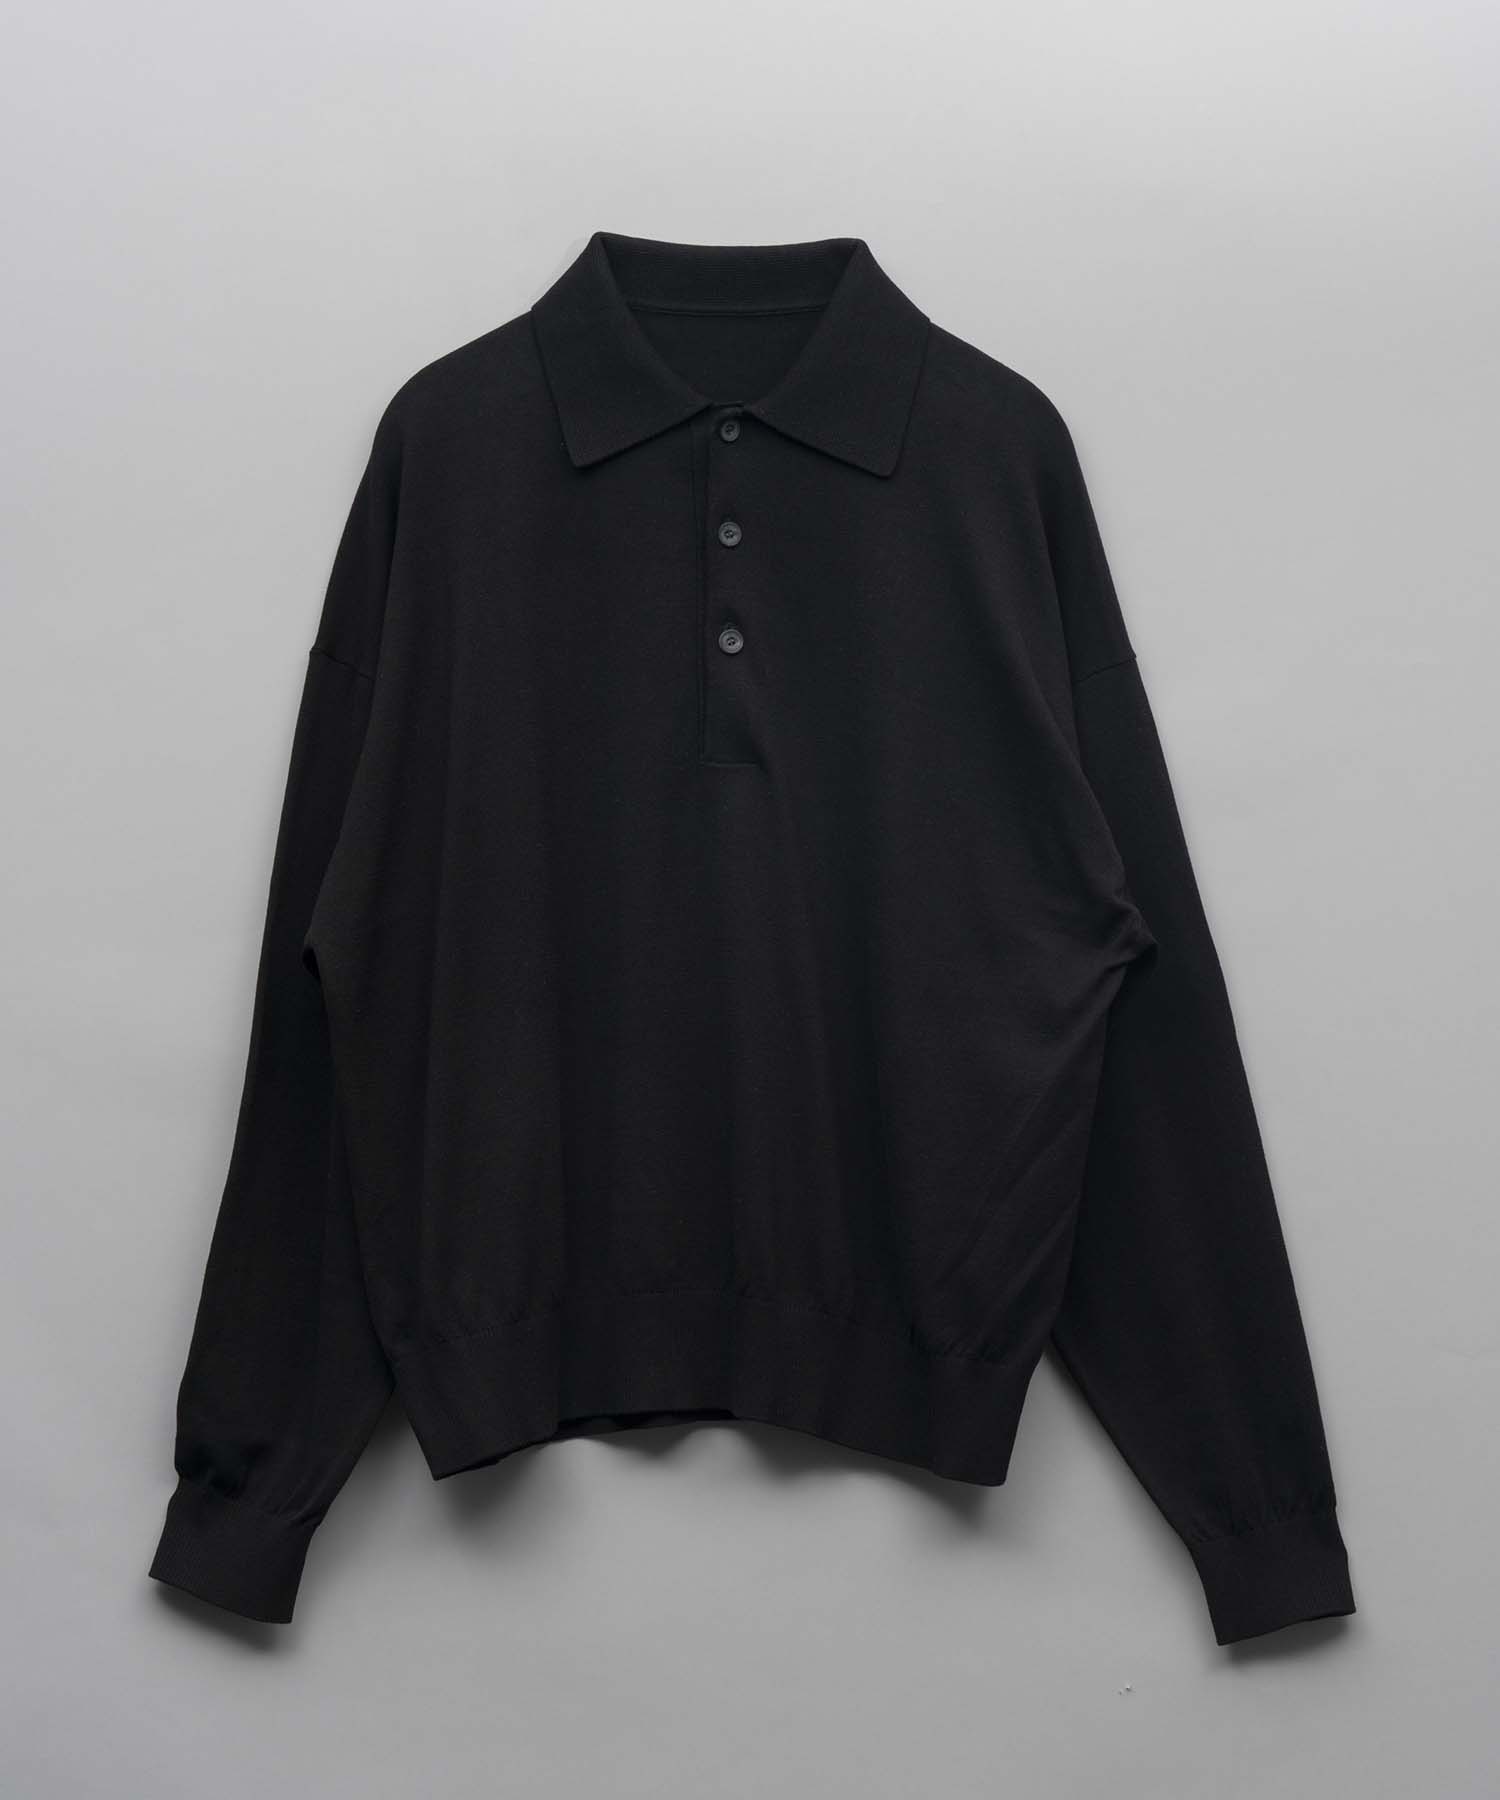 Prime-Over Slik Cotton Knit Polo Shirt